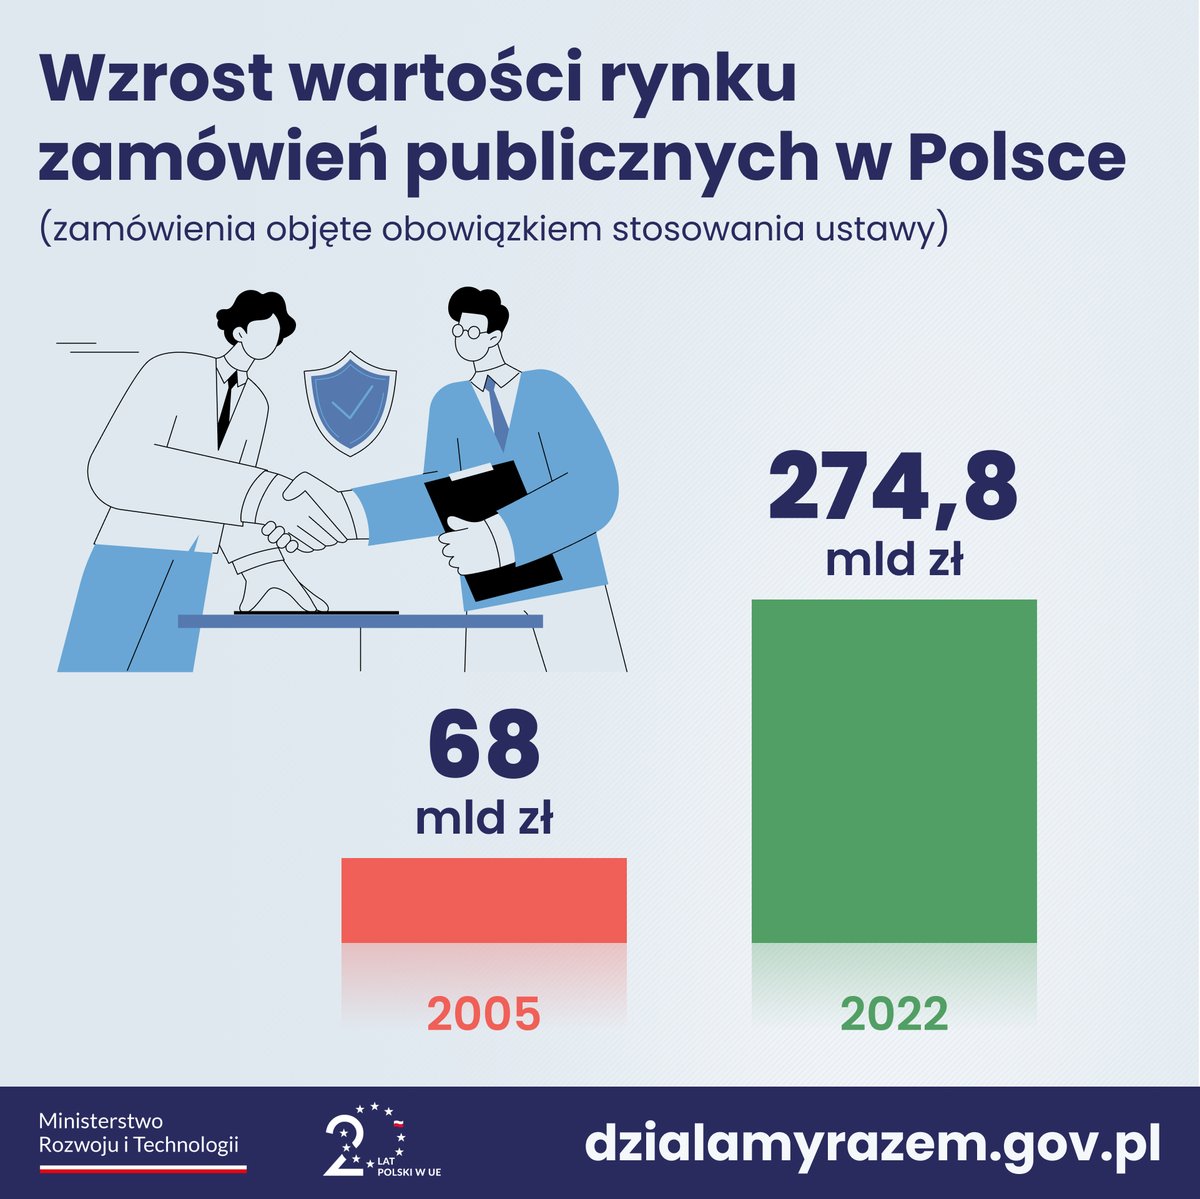 Wzrost wartości rynku zamówień publicznych w Polsce to kolejny znak dynamicznego rozwoju gospodarczego naszego kraju, którego nie byłoby bez Polski w Unii Europejskiej. W 2005 roku wartość tego rynku wynosiła 68 mld zł, a w 2022 roku wzrosła czterokrotnie – do 274,8 mld zł! 📈💰